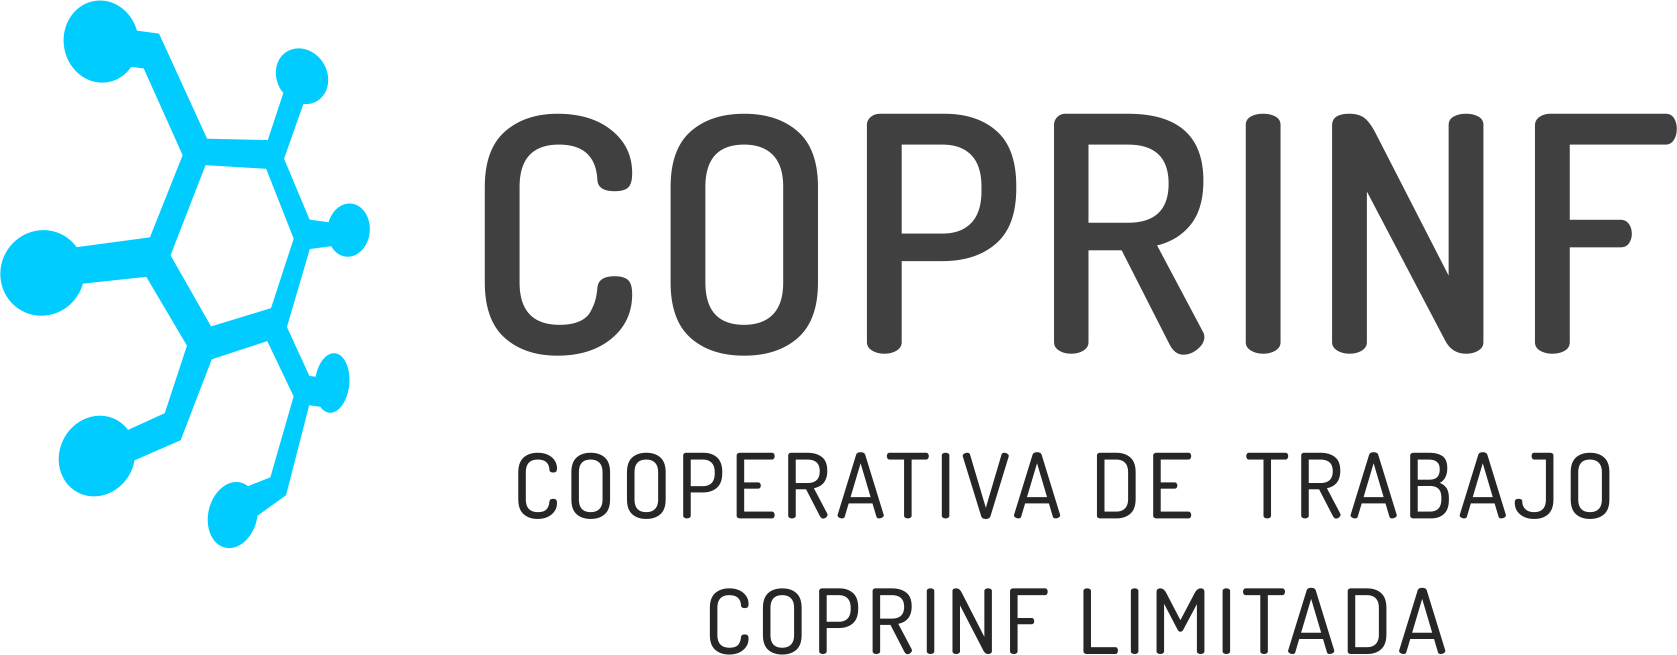 Cooperativa de Trabajo Coprinf Ltda.